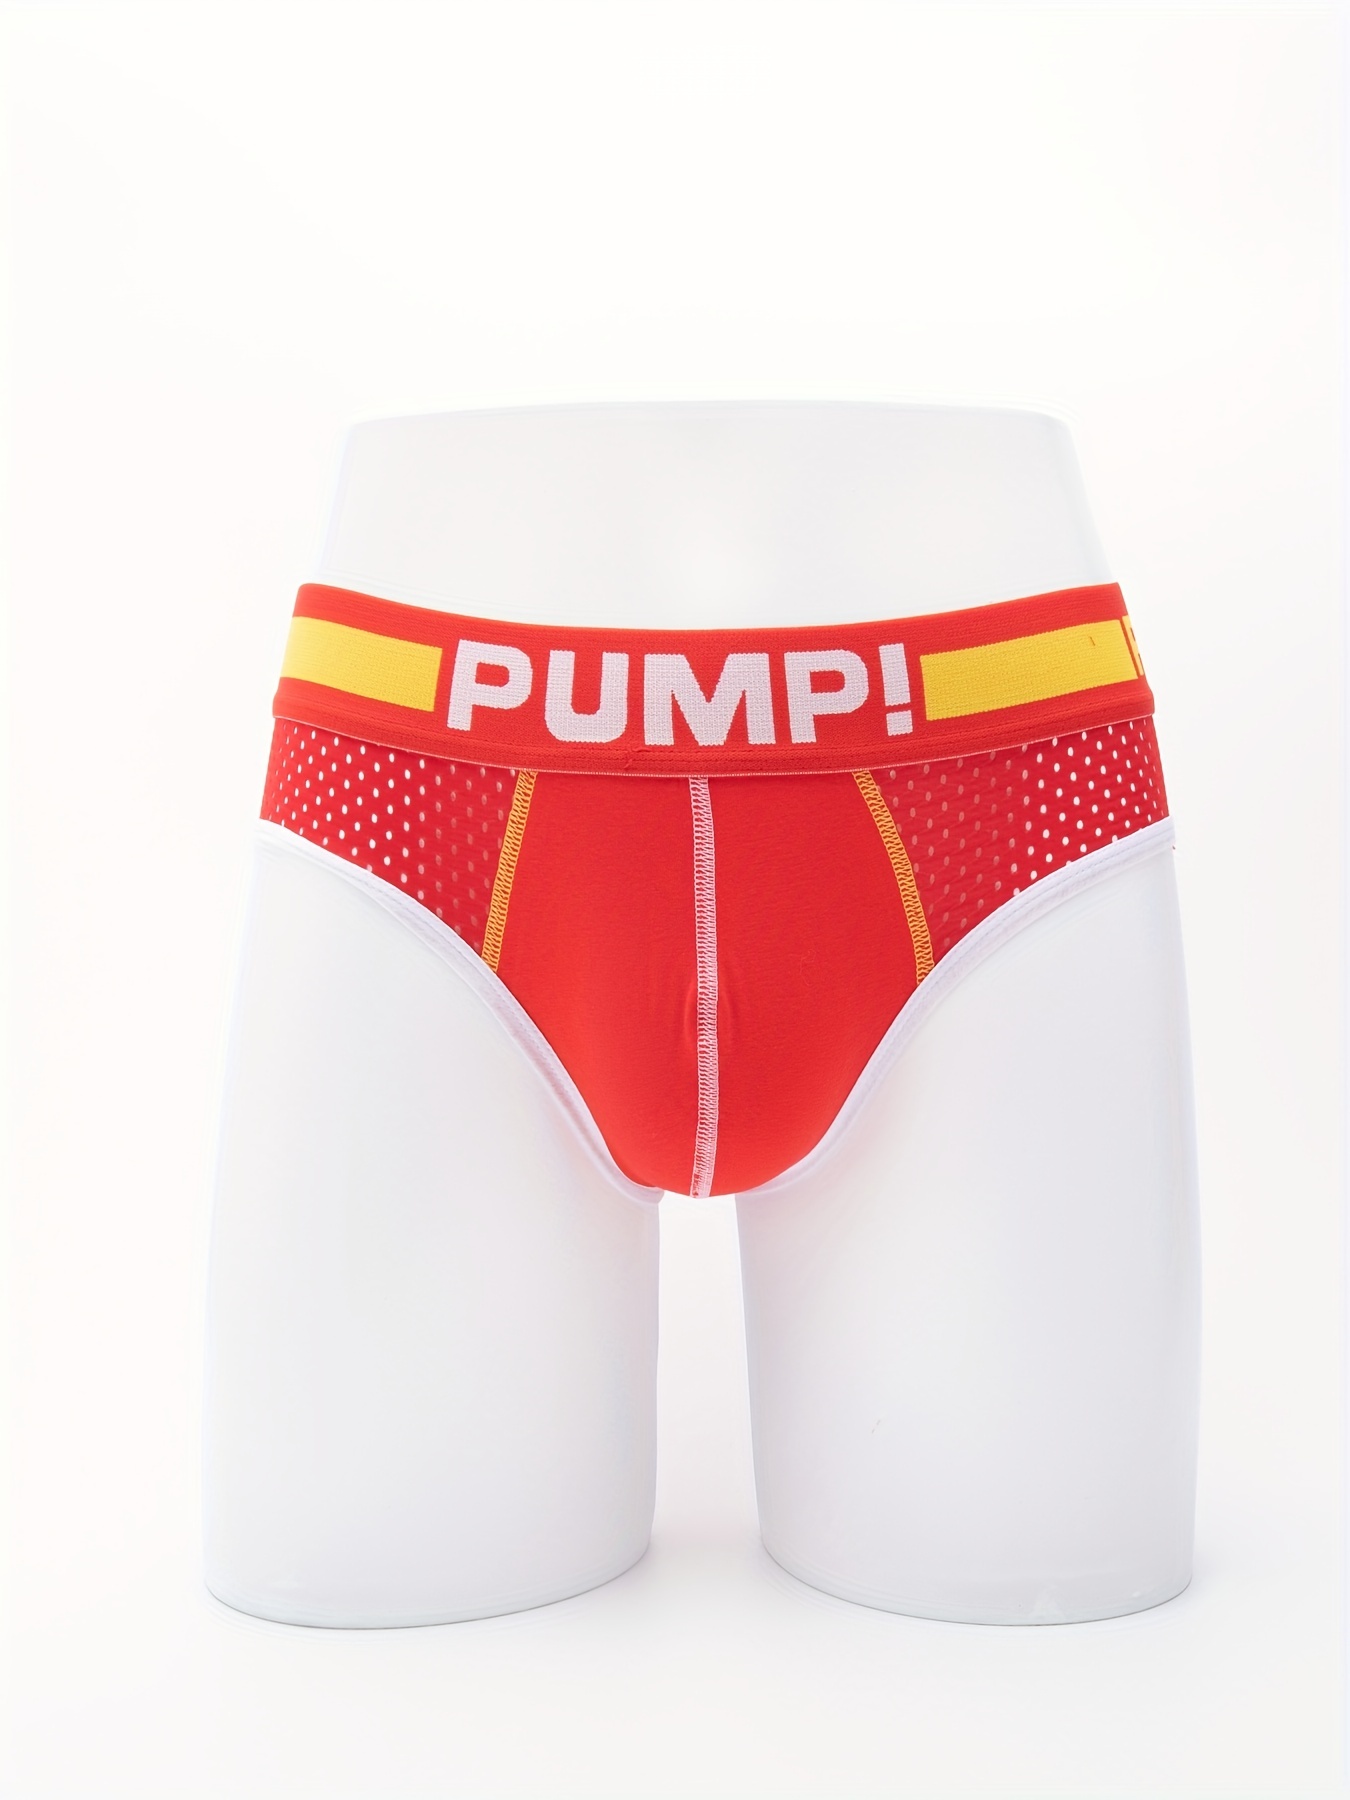  Pump! Underwear